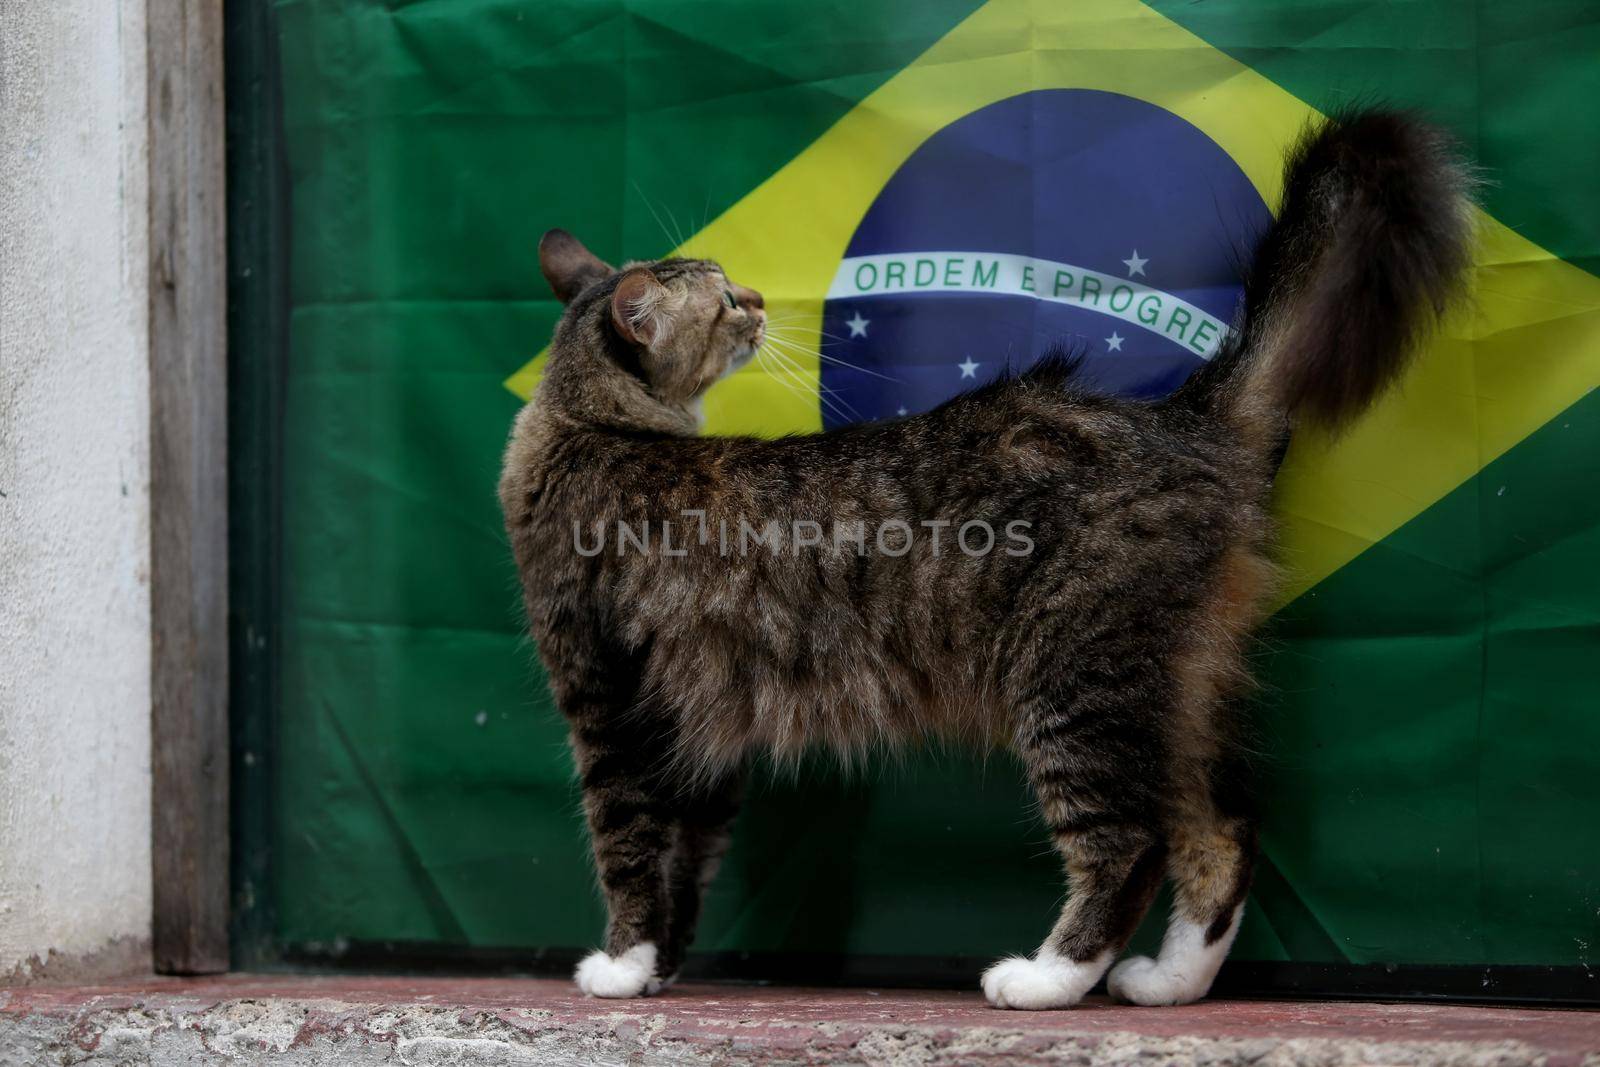 brazil flag on display by joasouza